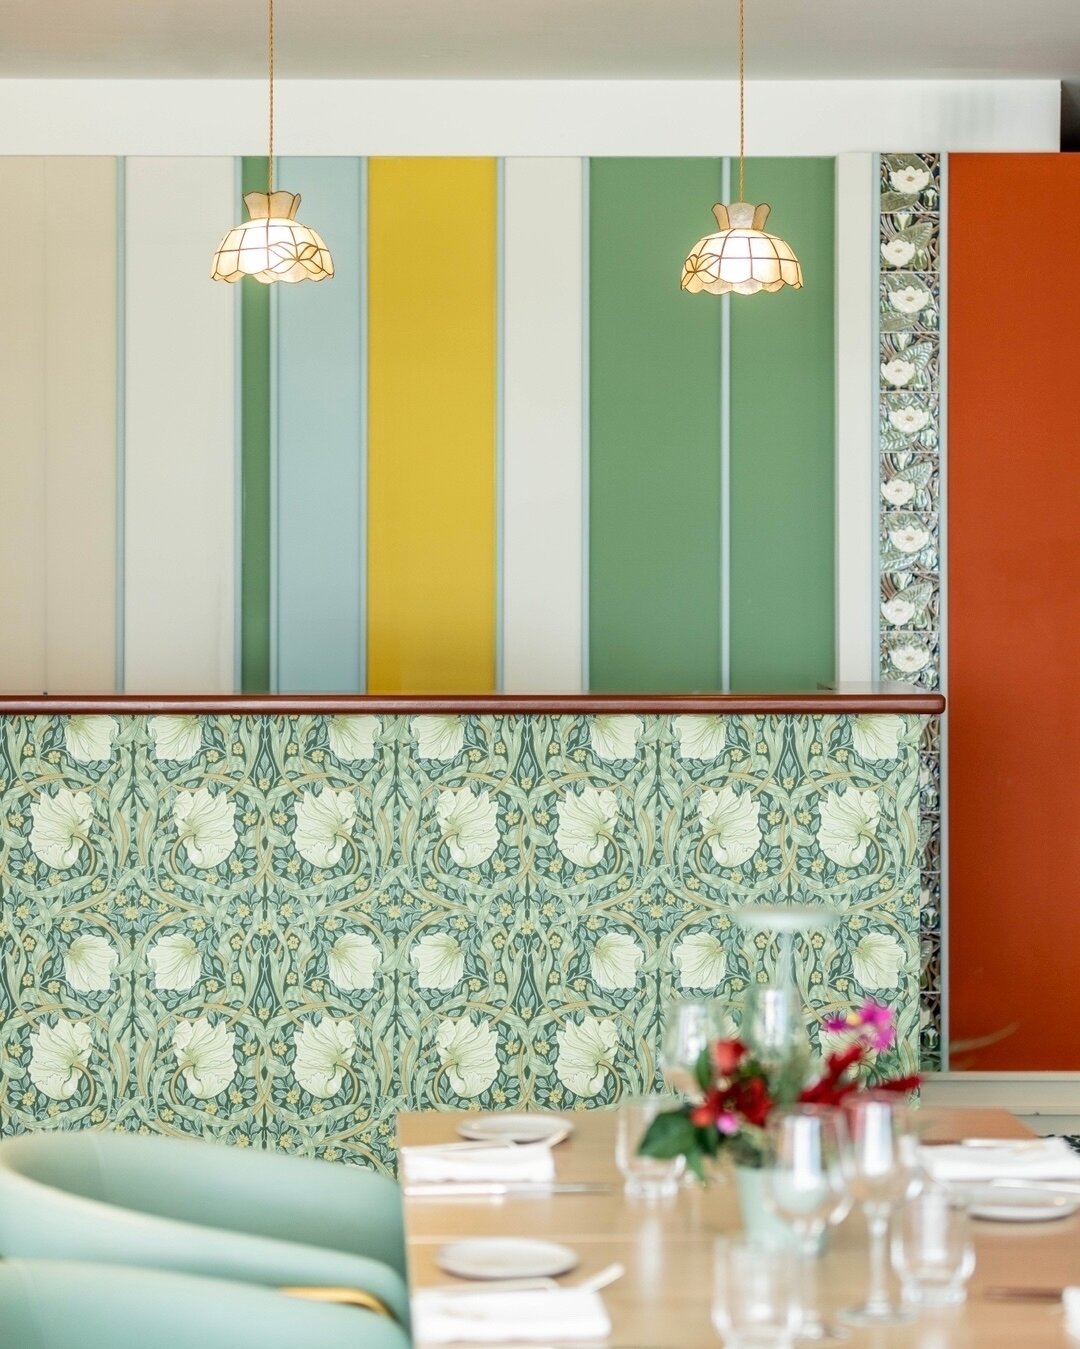 Welcome to @smakelijk_restaurant_monaco 😎

Le desk d&rsquo;accueil
Ambiance art nouveau avec une palette de couleurs puissante 🎨
Astuce pour donner plus de puissance au mur : Rythmer les aplats de peintures avec des baguettes et de la fa&iuml;ence 